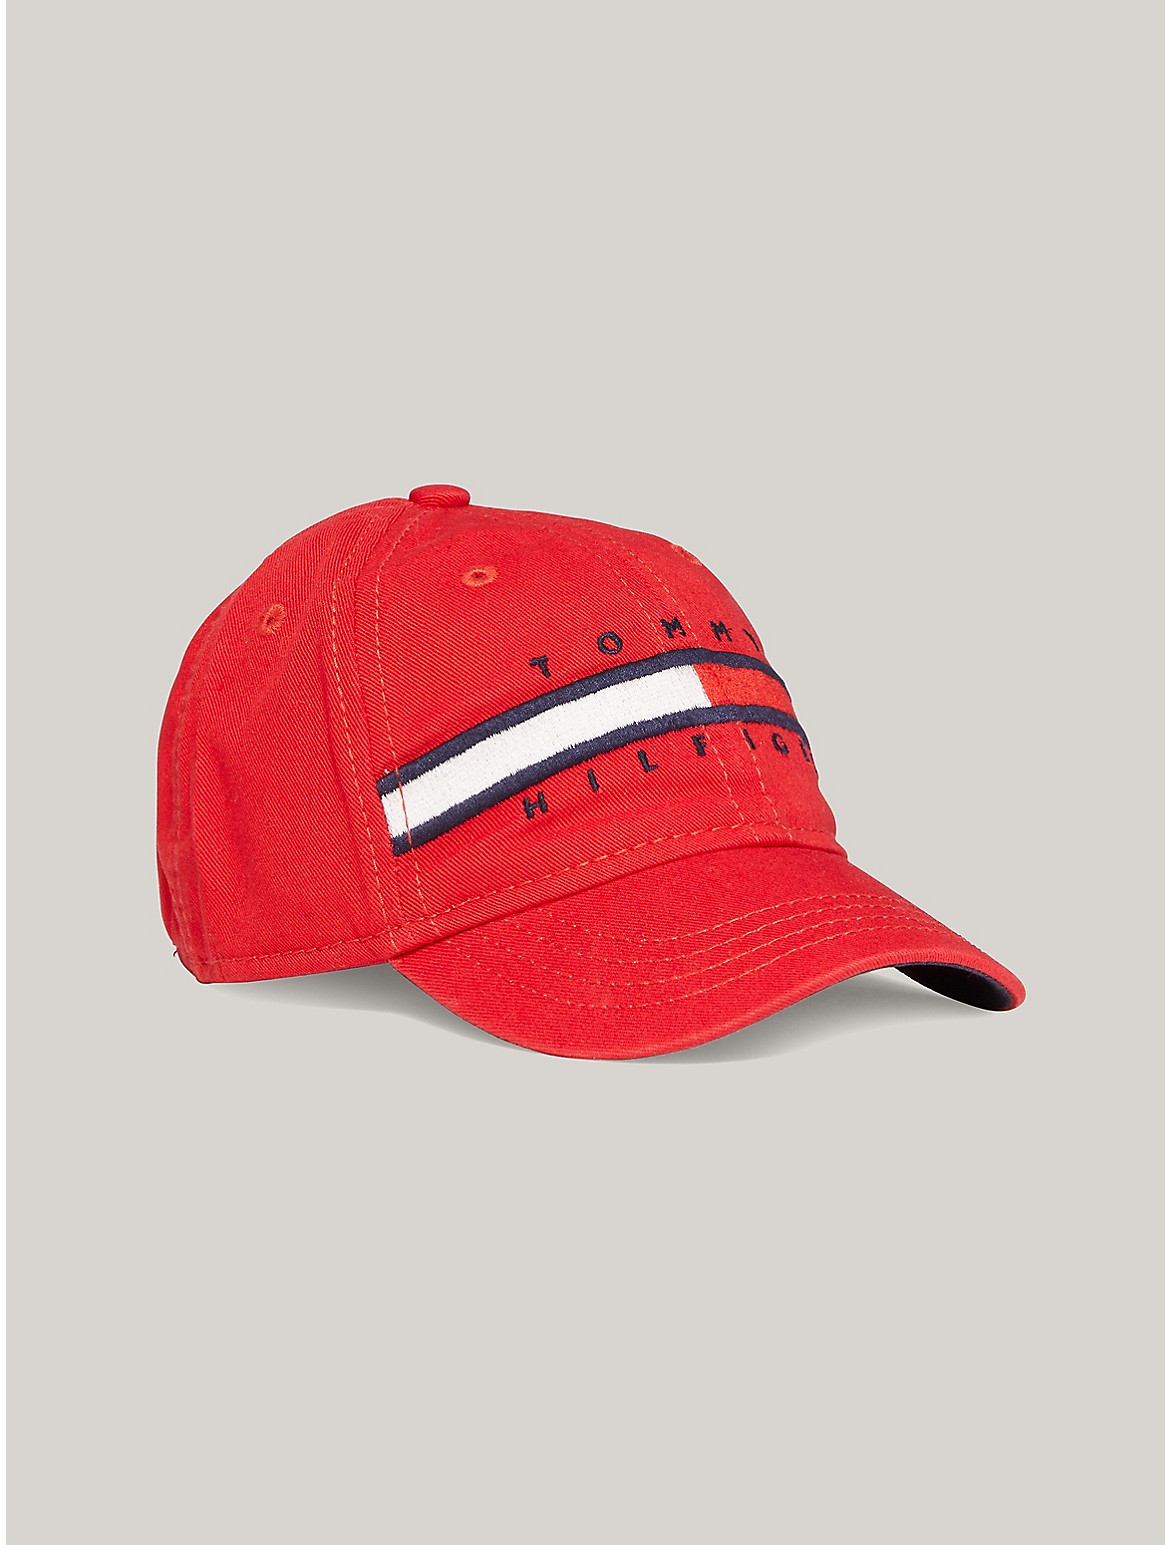 Tommy Hilfiger Kids' Flag Stripe Logo Baseball Cap - Red - L